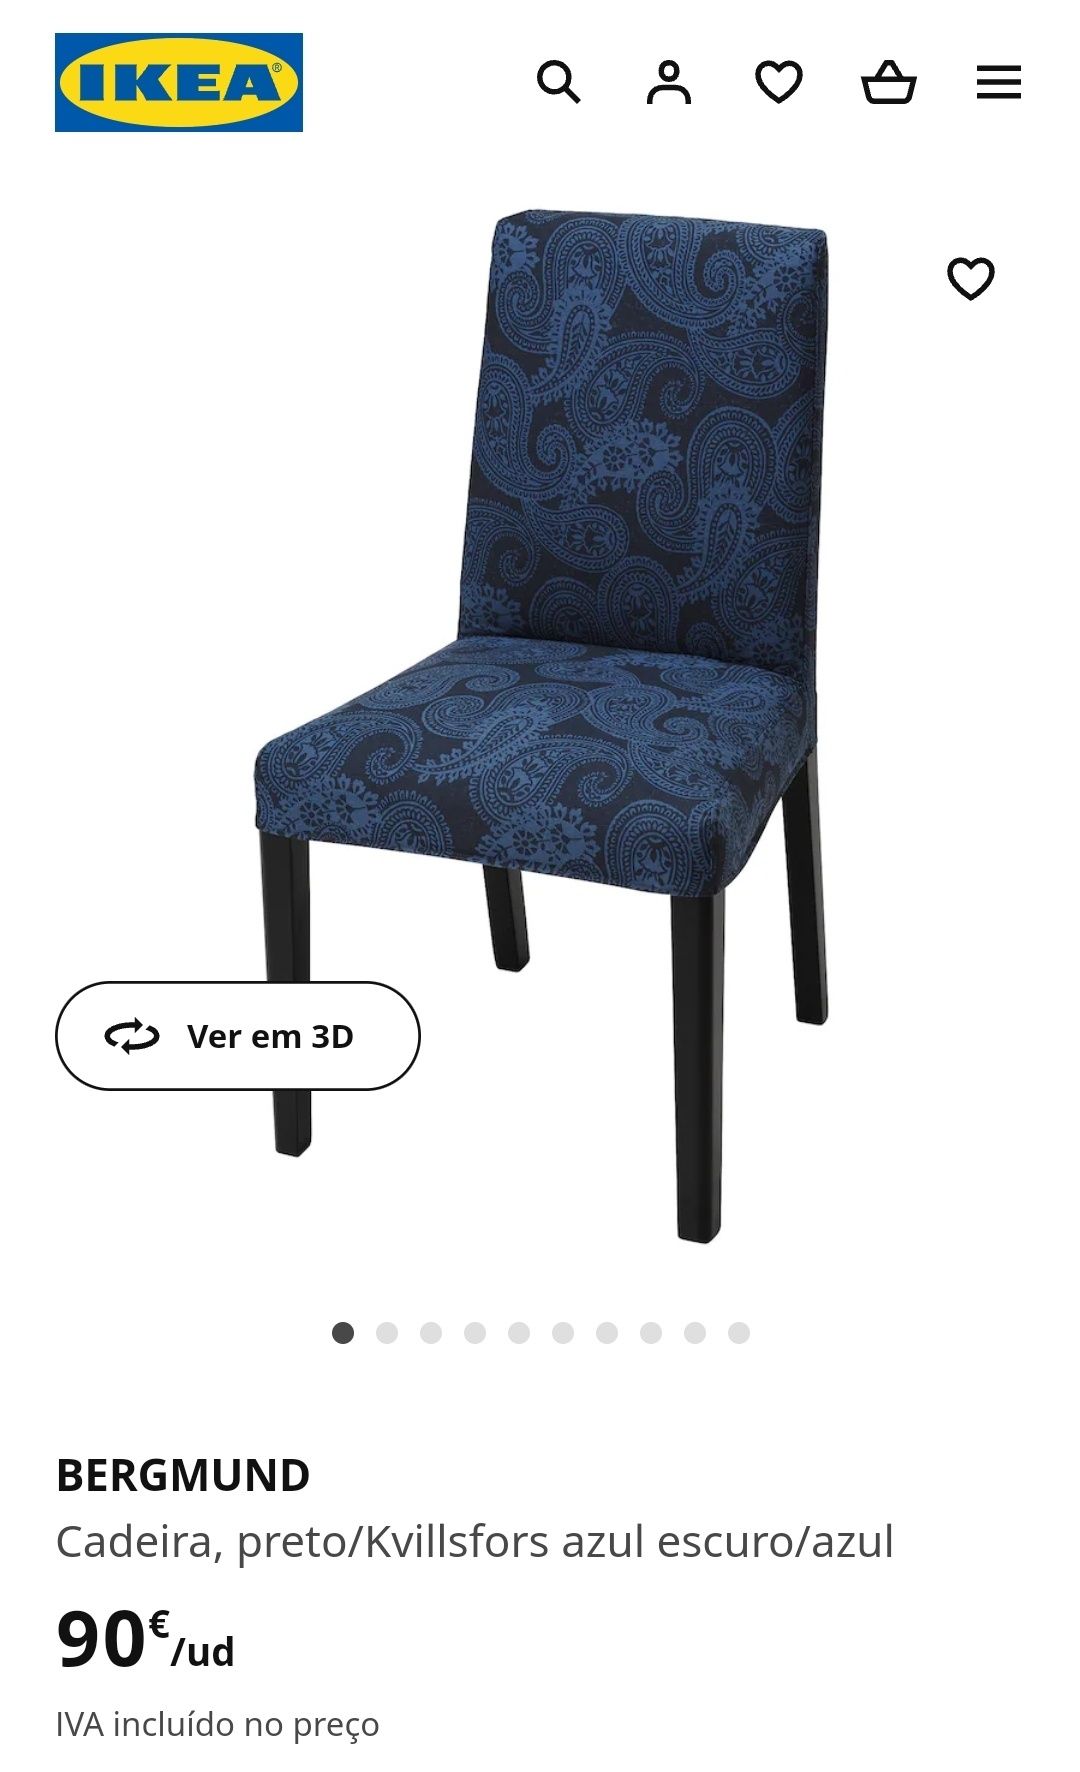 Vendo conjunto de 4 cadeiras BERGMUND IKEA com capas